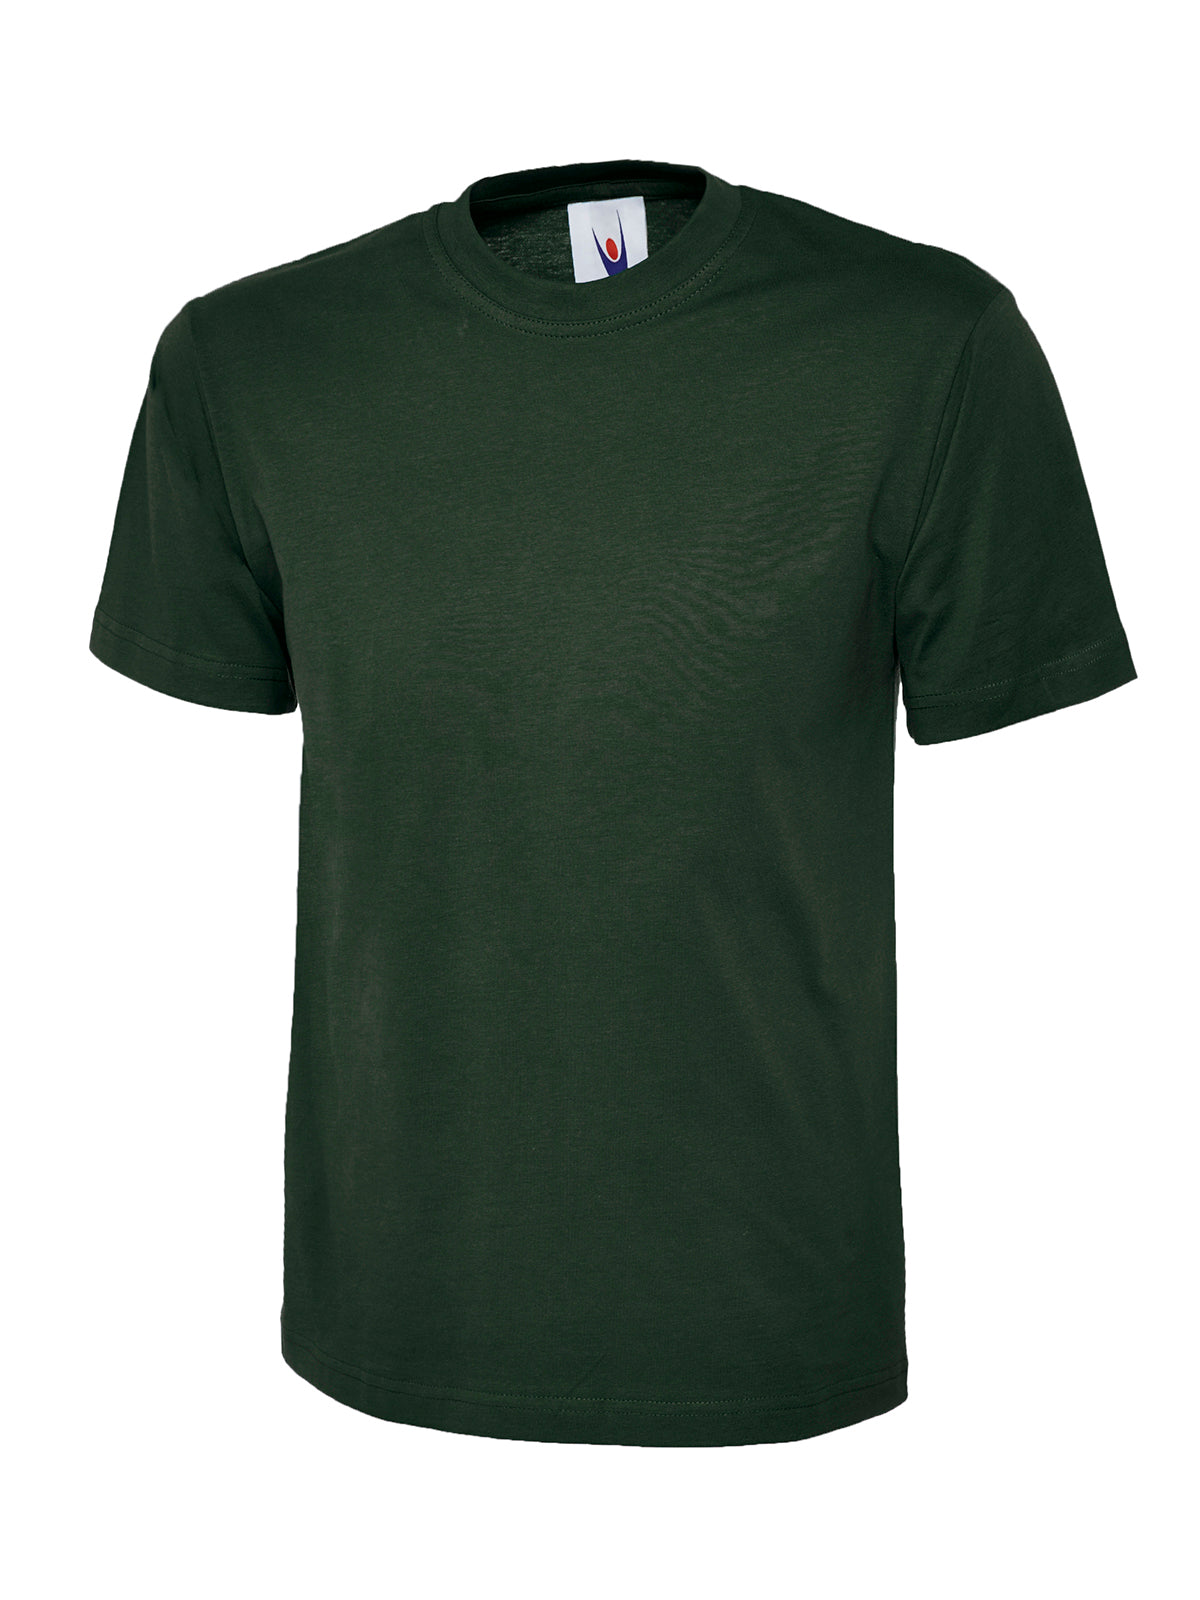 Uneek Classic T-shirt UC301 - Bottle Green